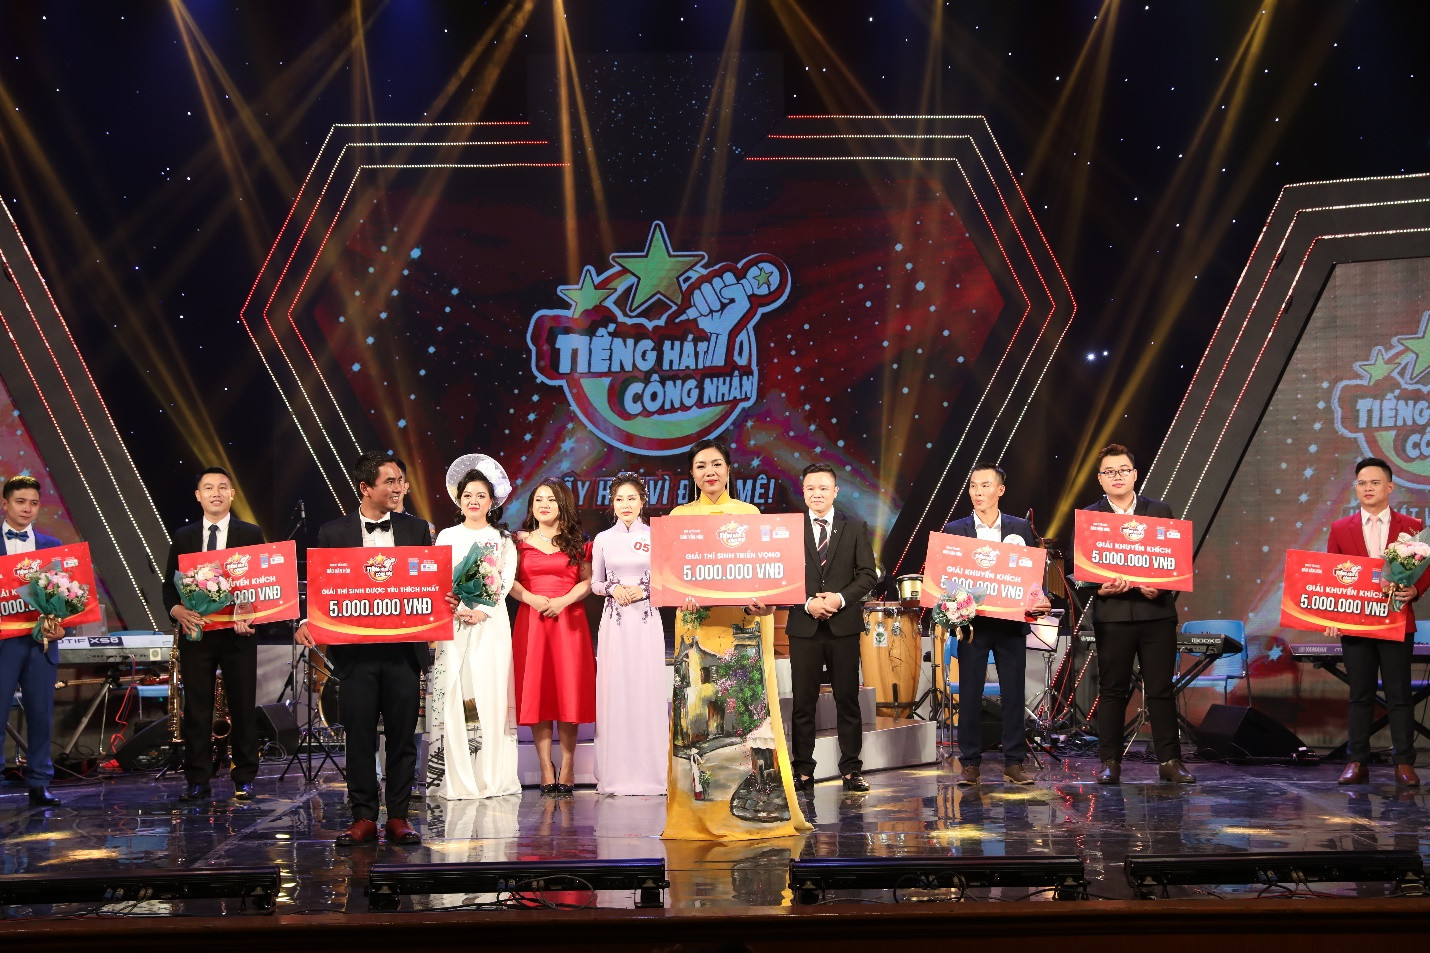 Đặng Duy Ngọc và Nguyễn Thị Hải Yến lần lượt đạt giải thí sinh được yêu thích và giải thí sinh triển vọng.